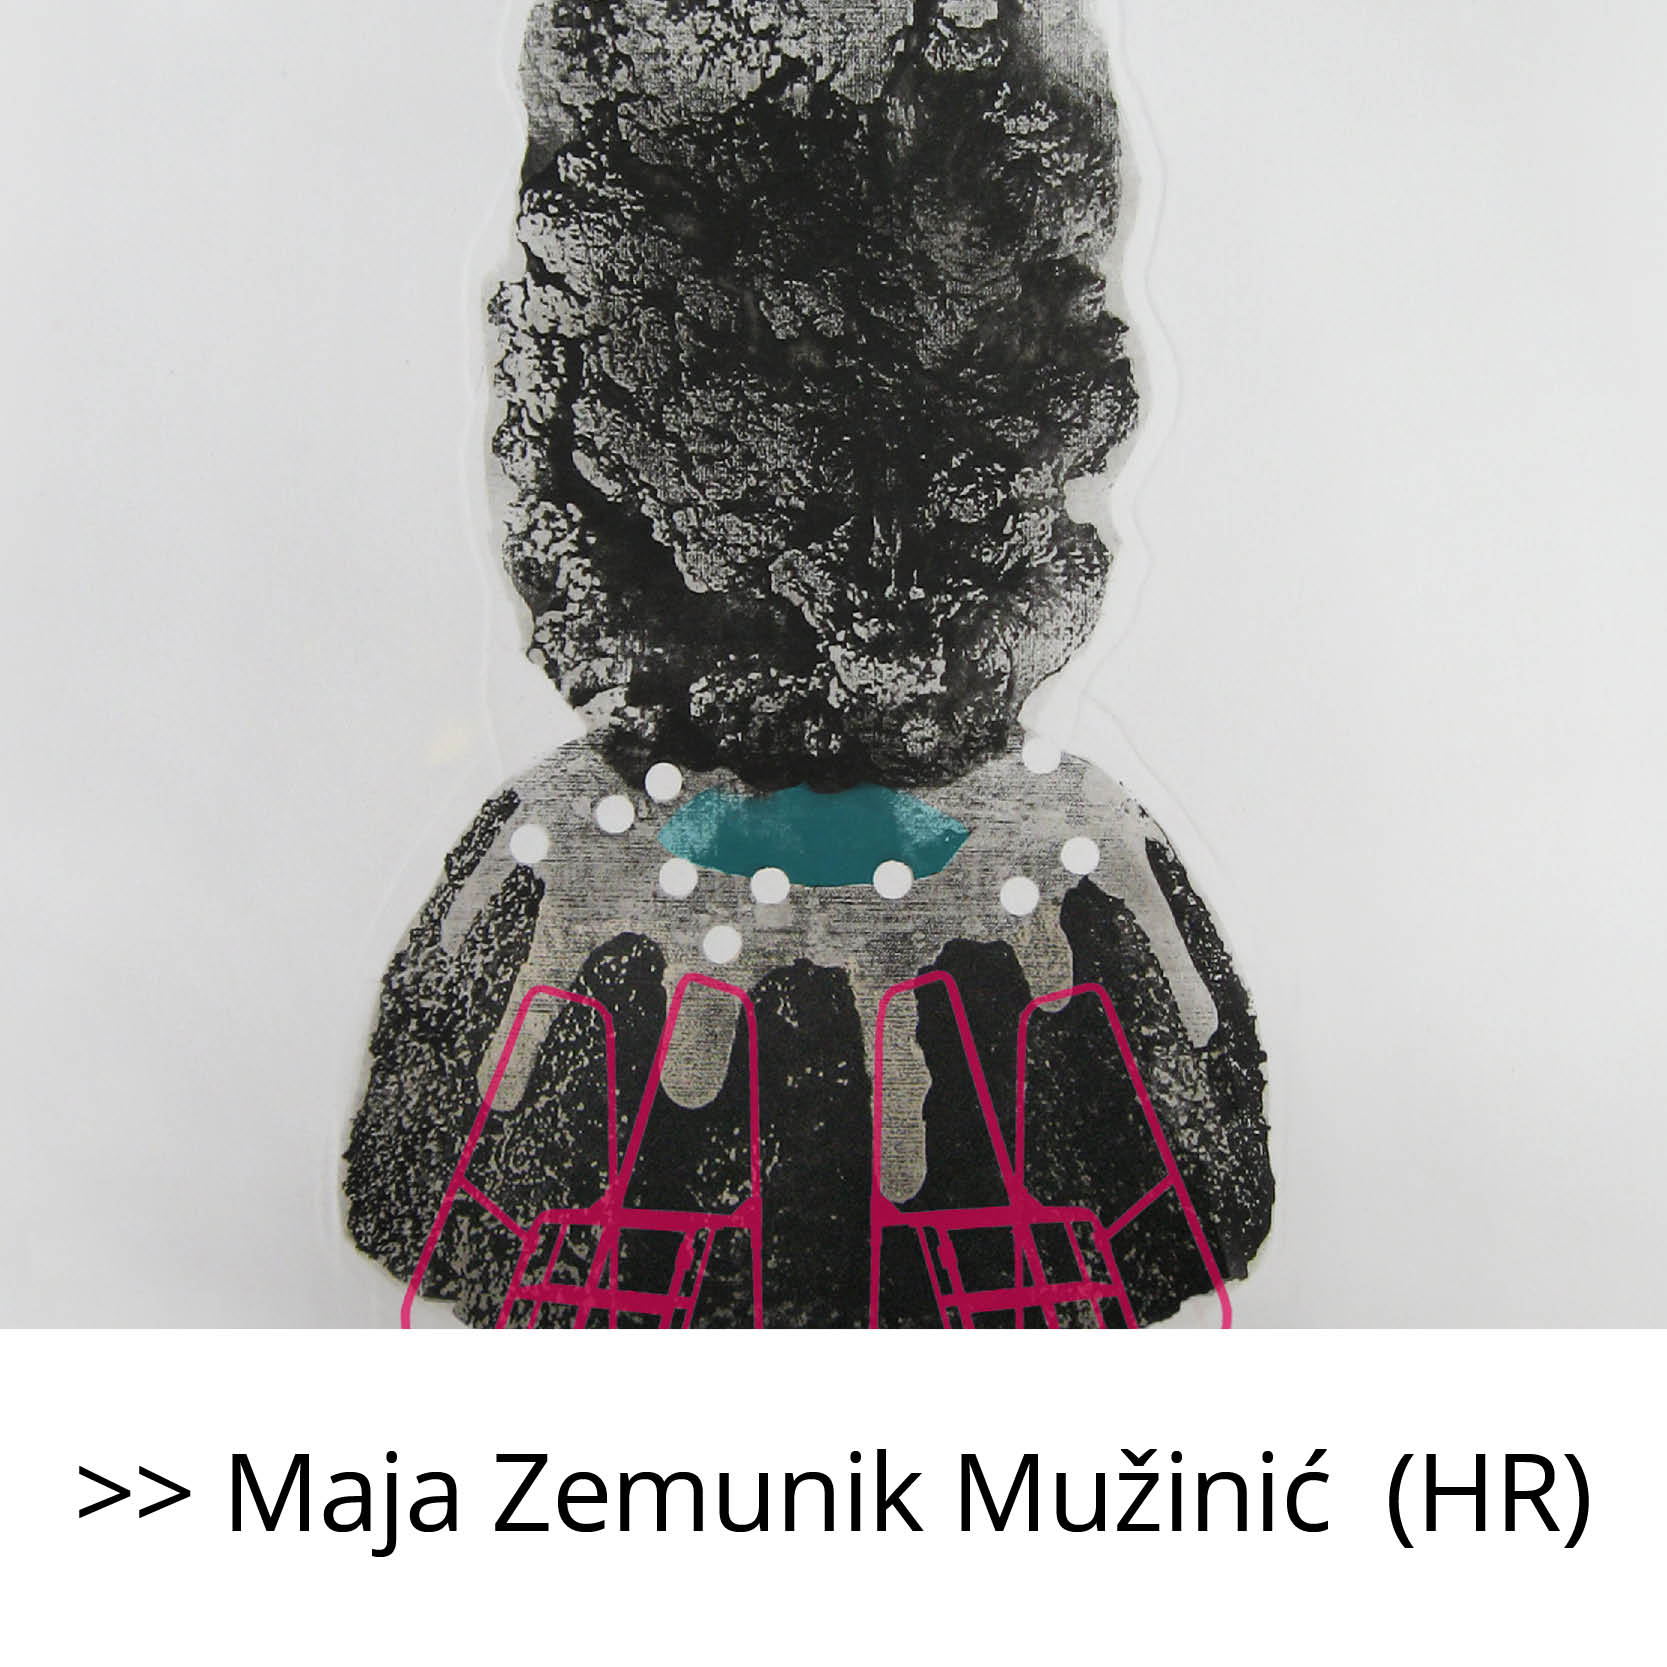 Maja_Zemunik_Mužinić_(HR)